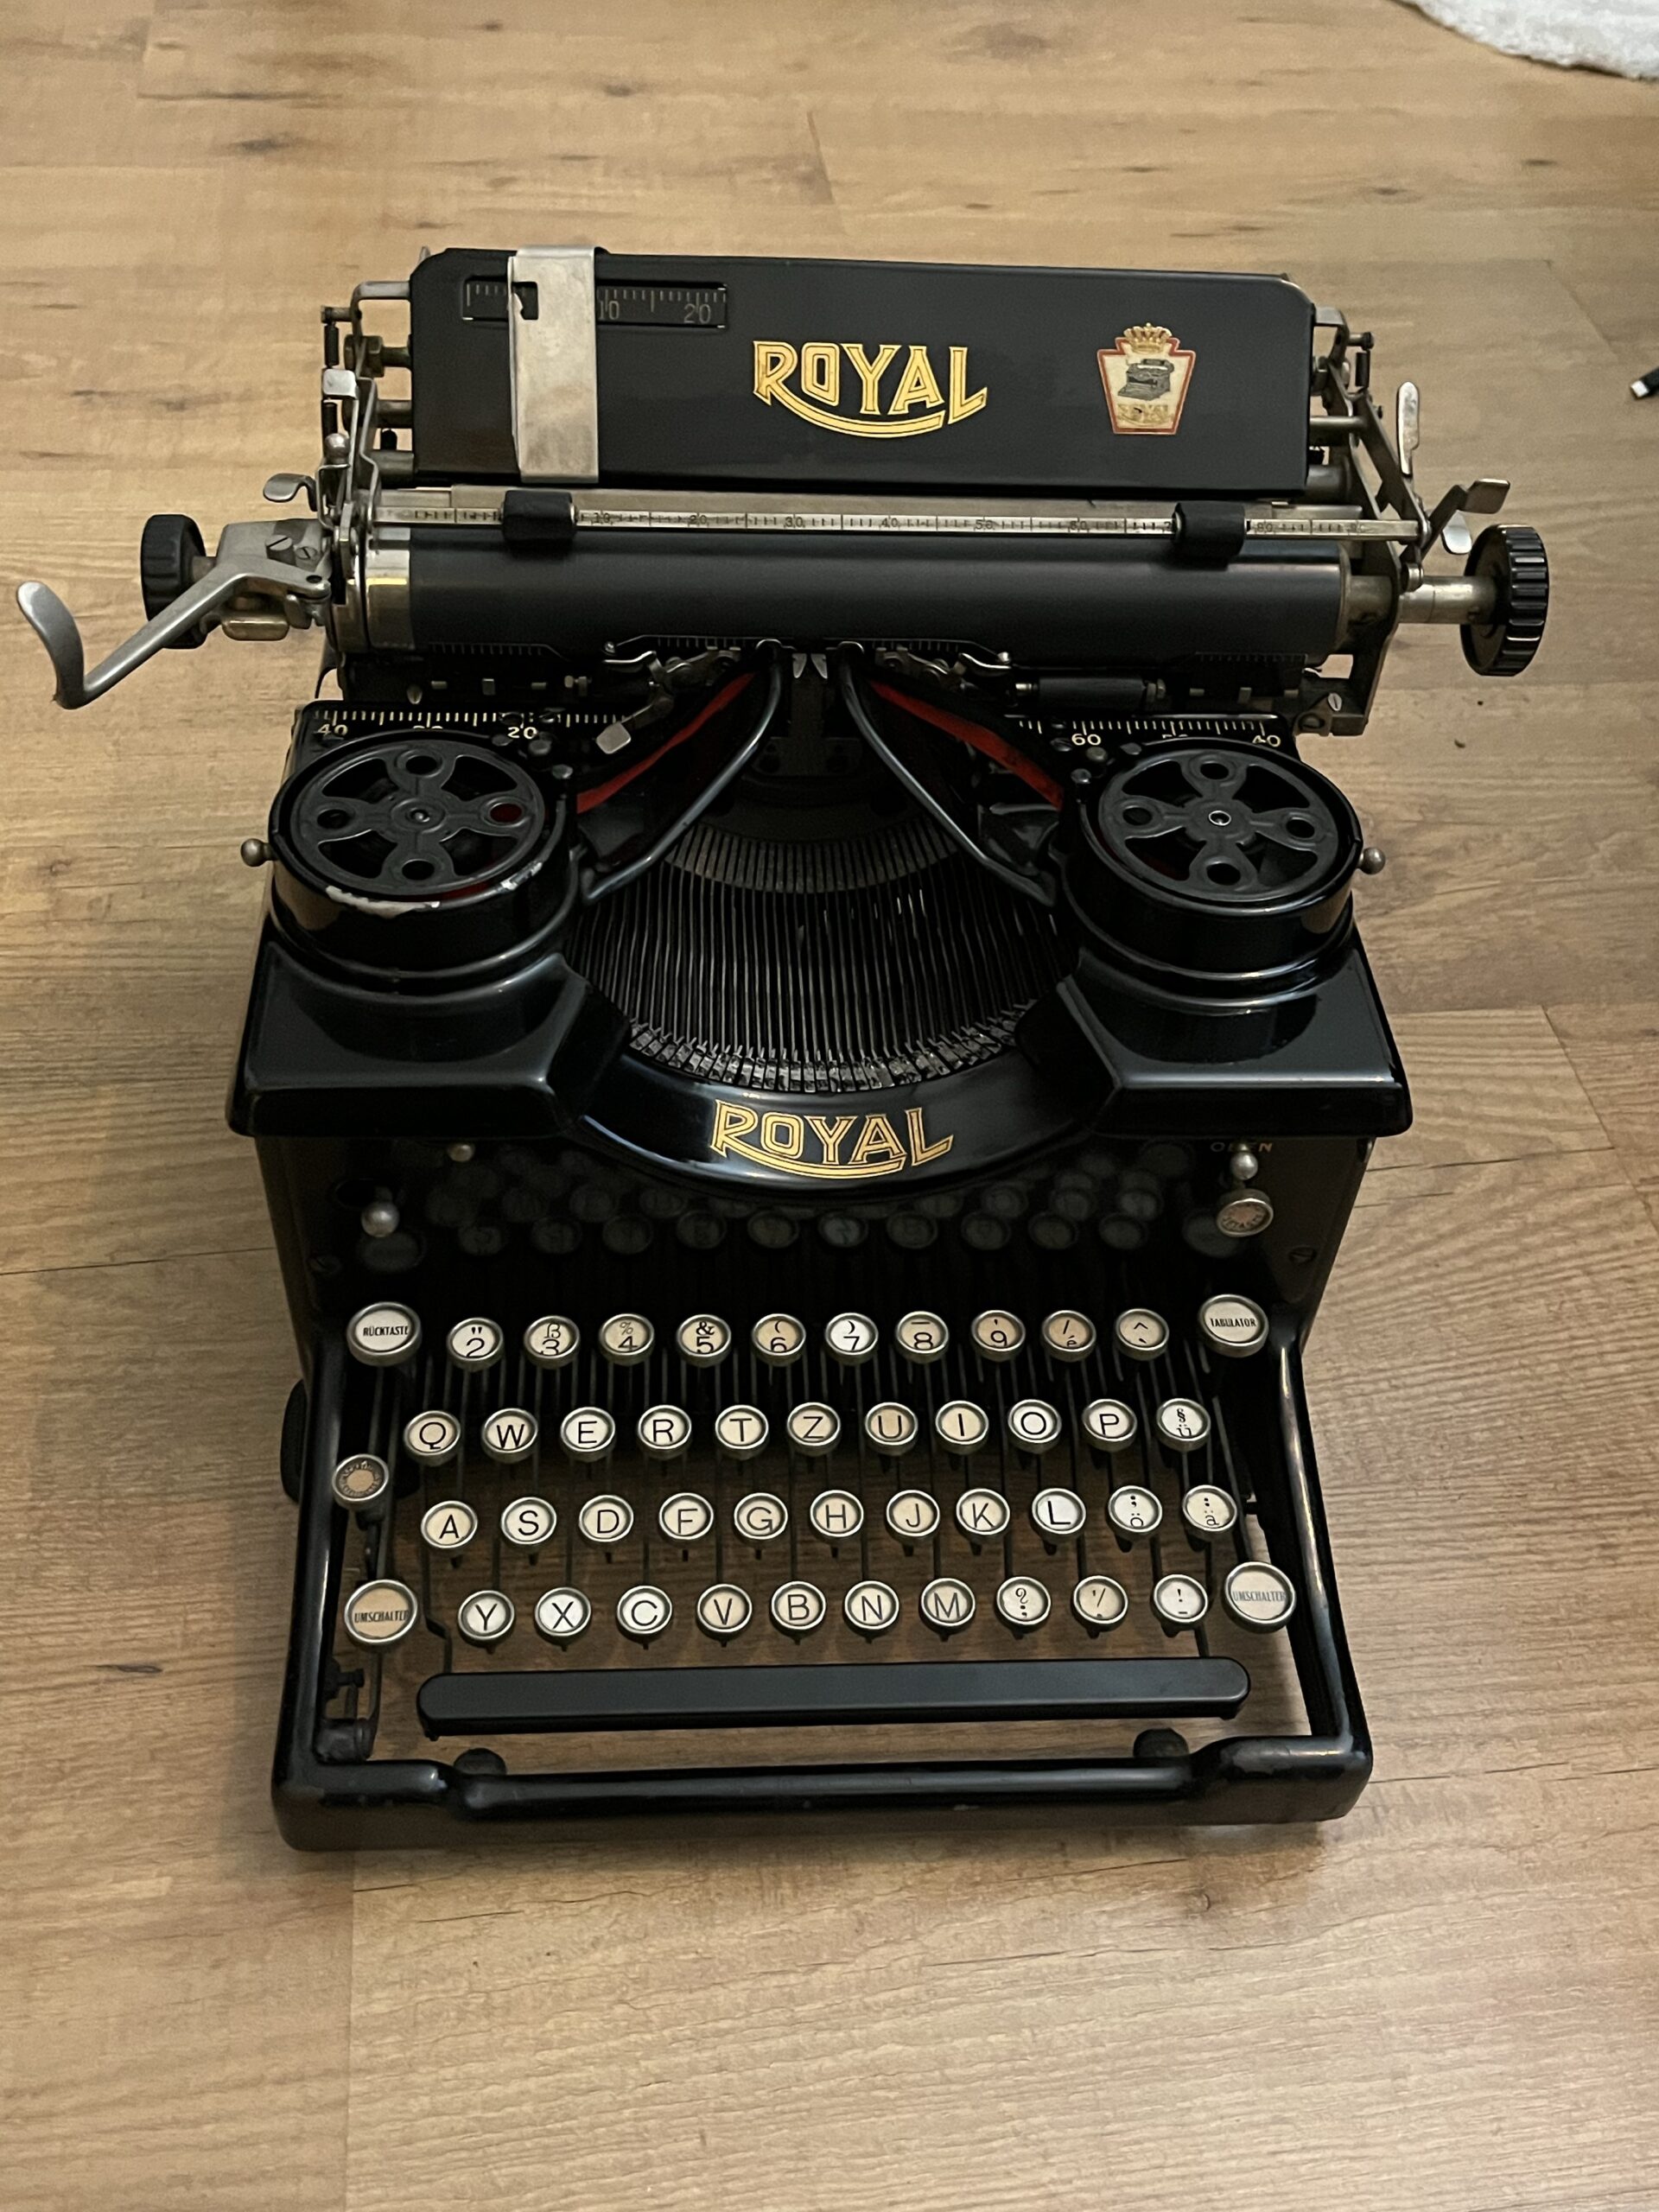 The Royal 10 Typewriter